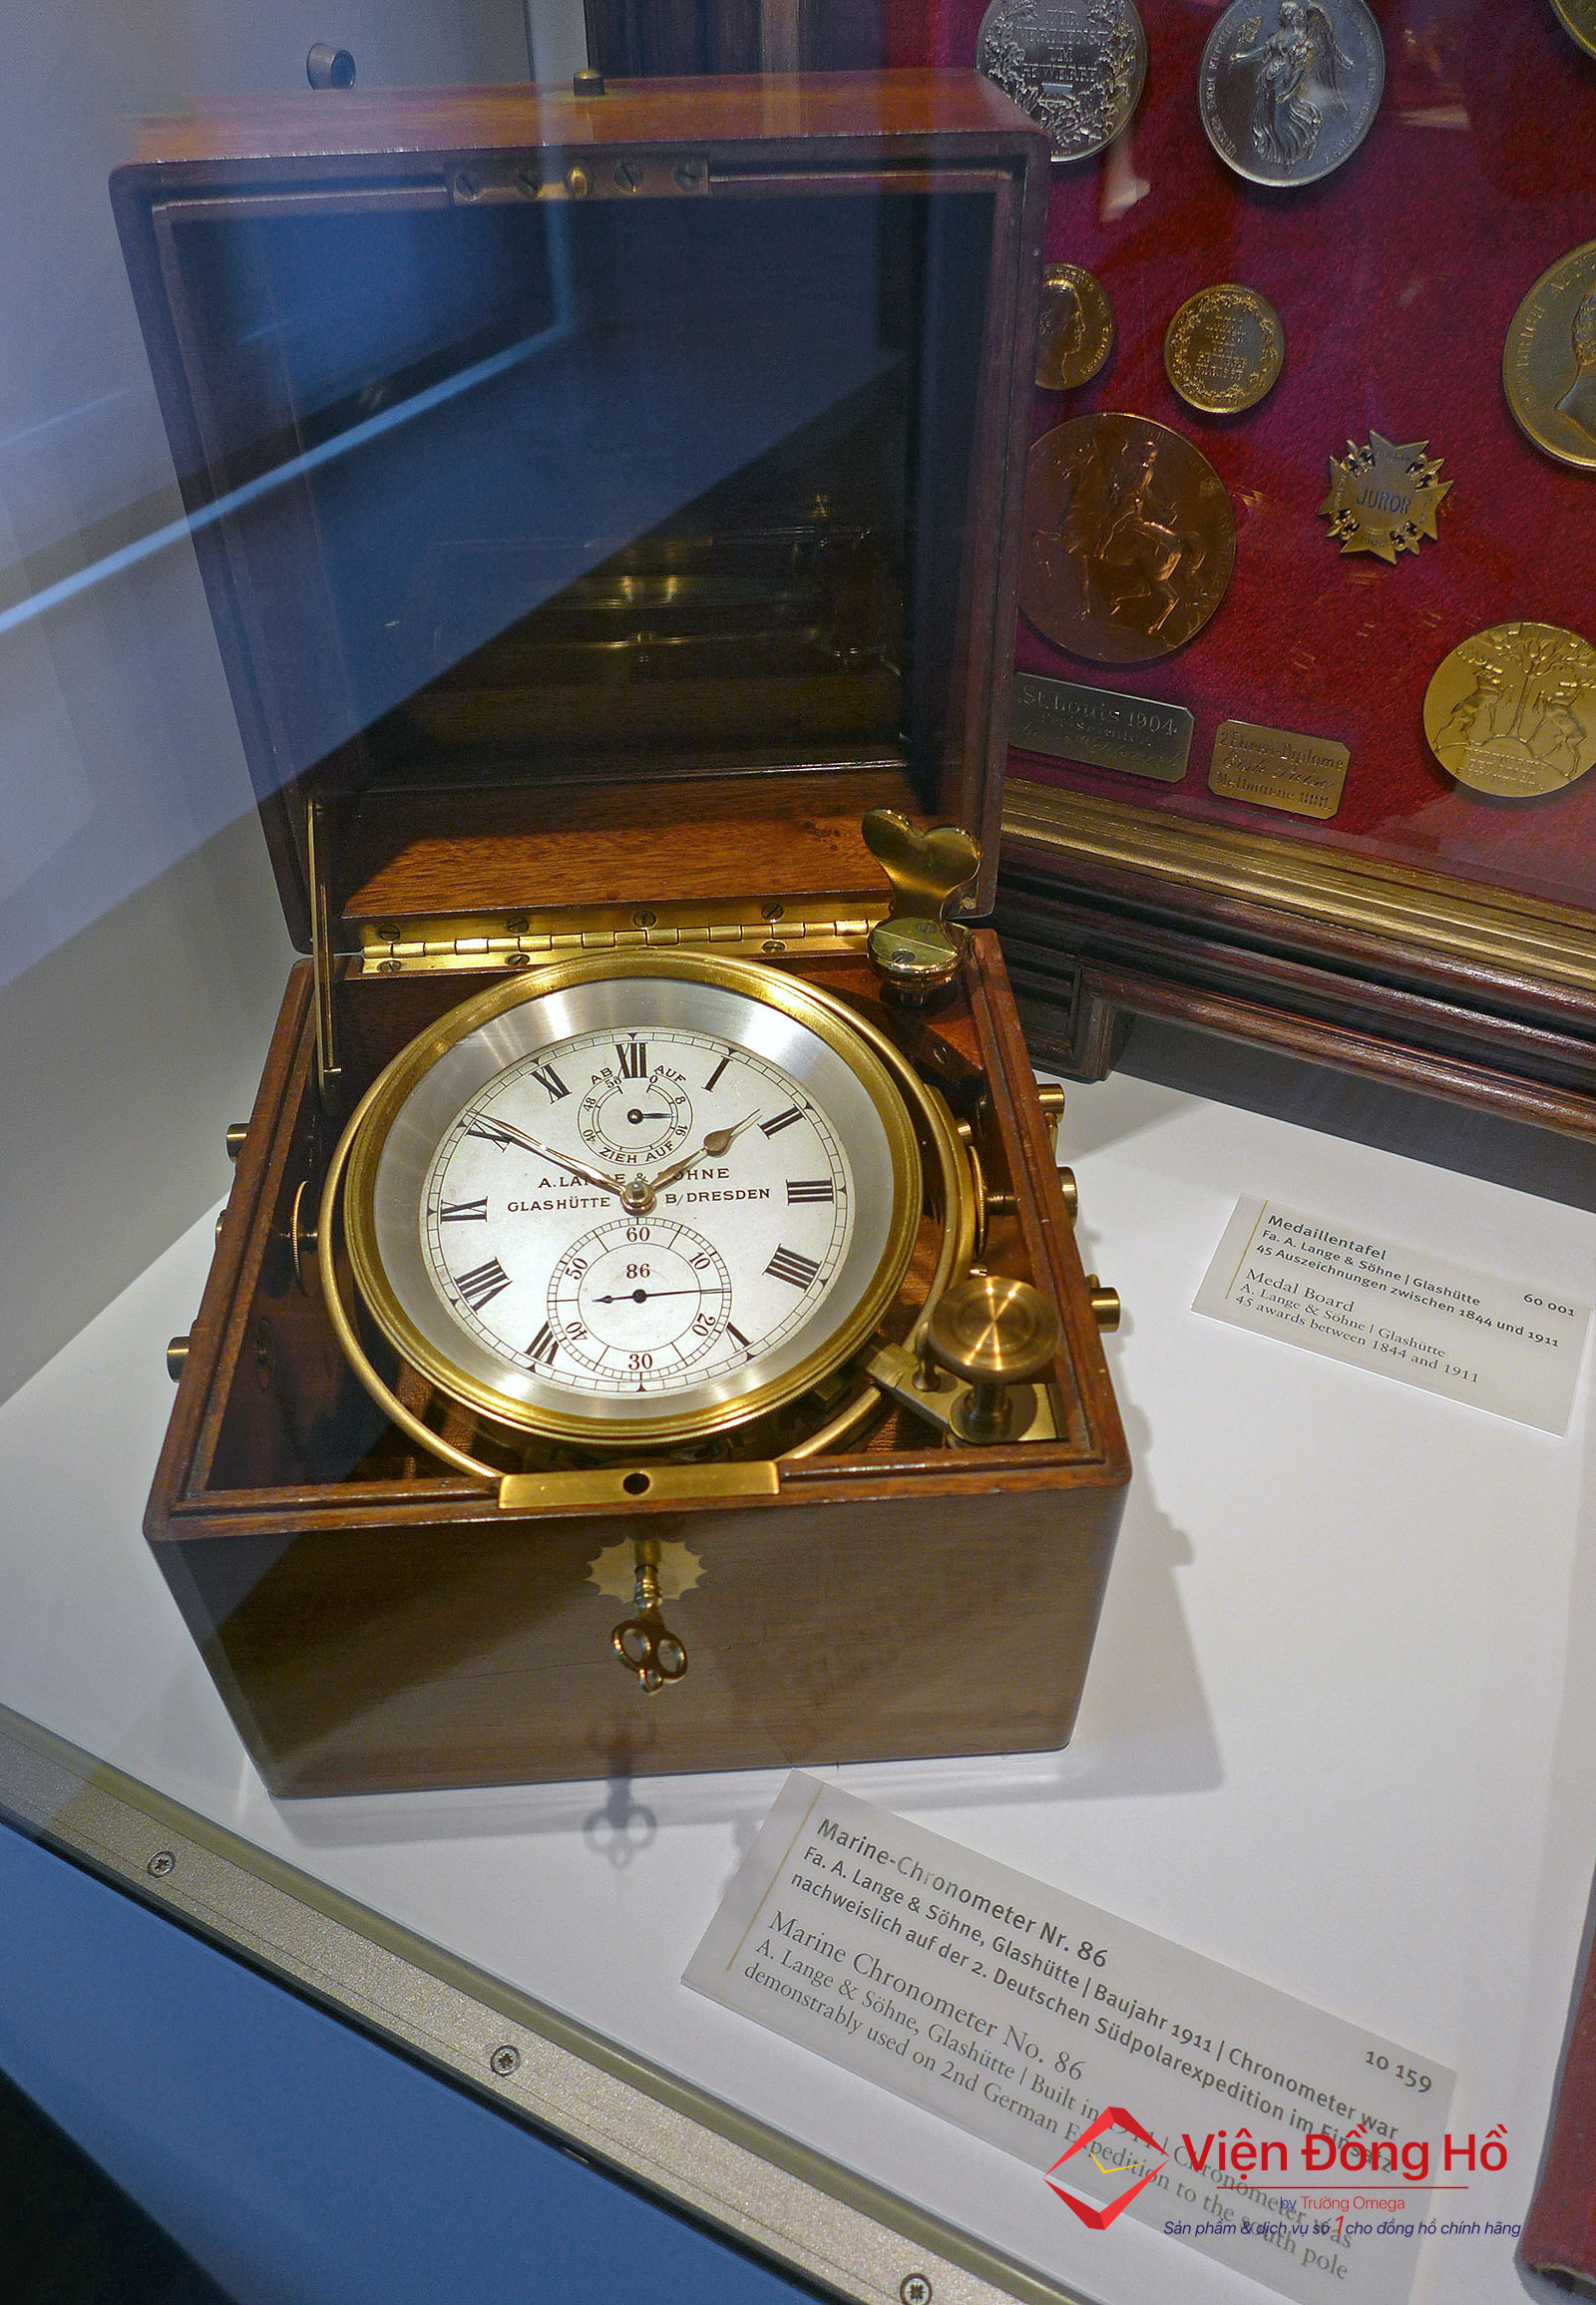 German Watch Museum - Tham quan bao tang dong ho Duc 12